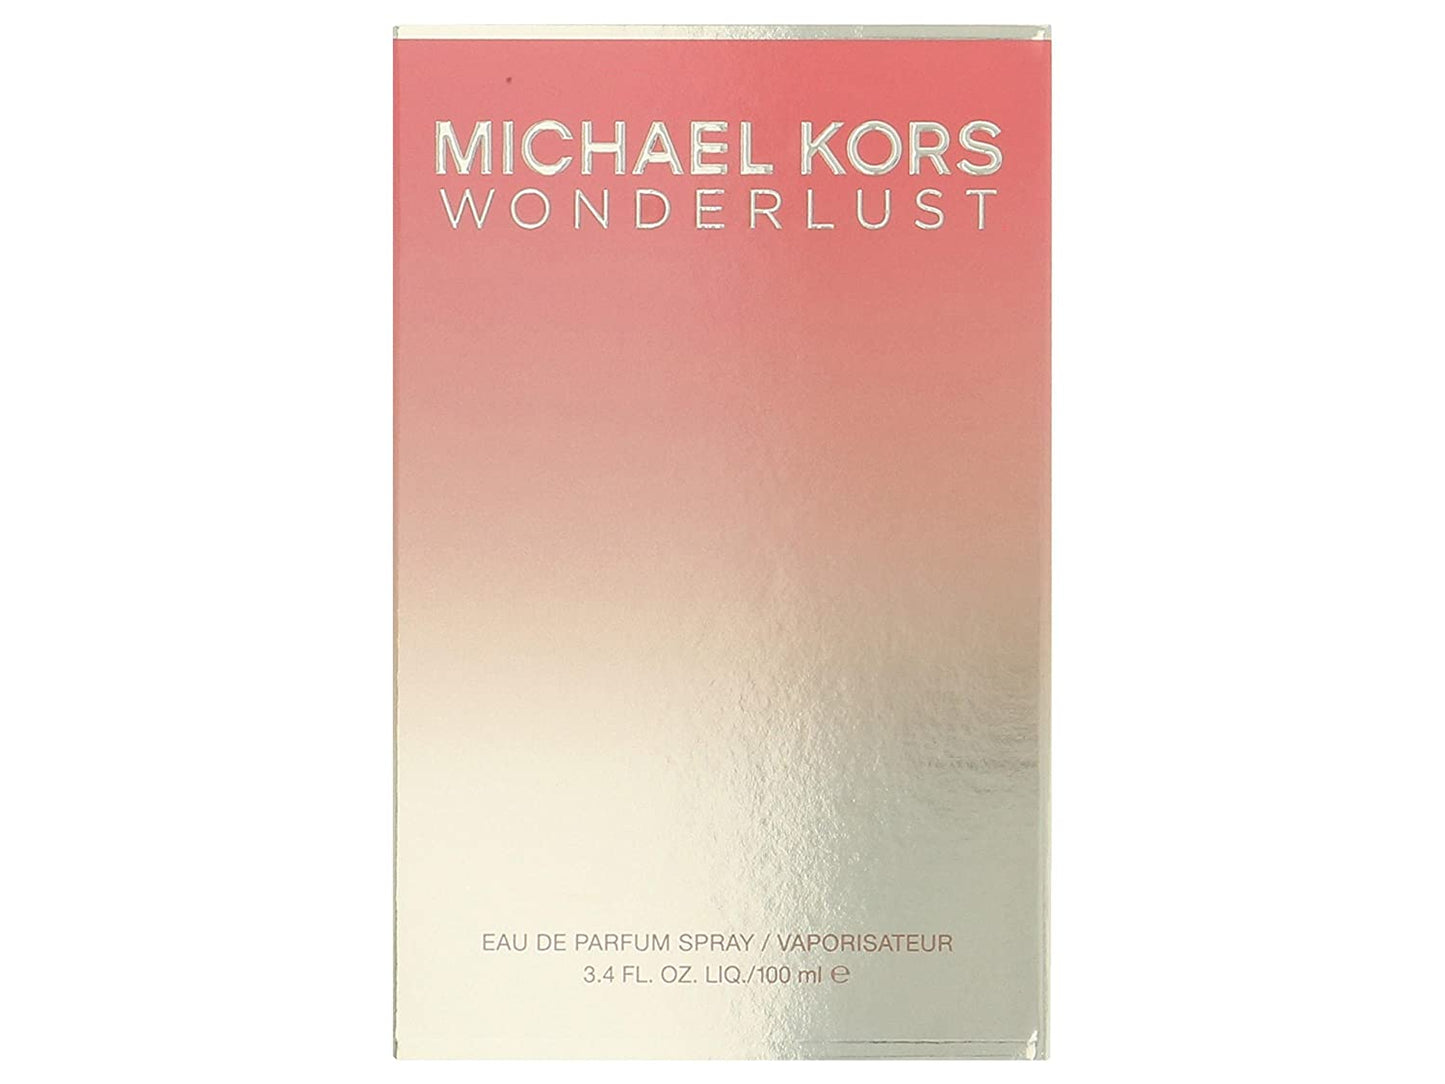 Michael Kors Wonderlust Eau de Parfum Spray, 3.4 Fl Oz (Package May Vary)